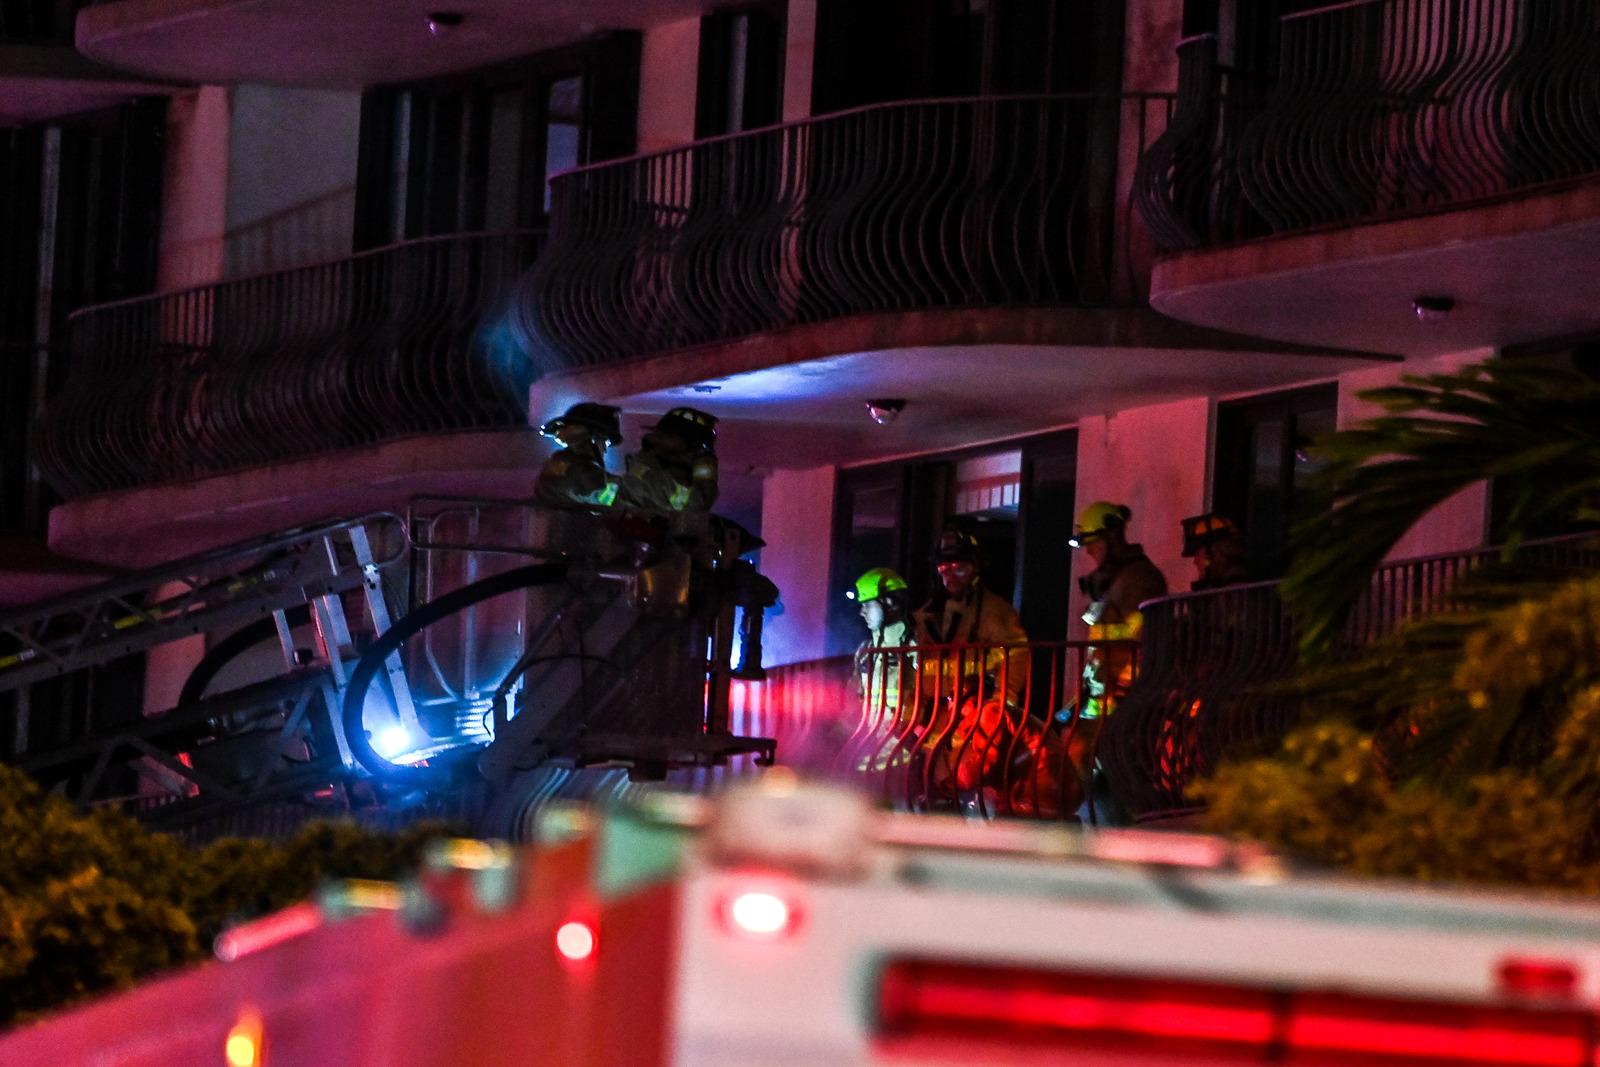 Bombeiros realizam resgate em prédio que desmoronou parcialmente, em Miami